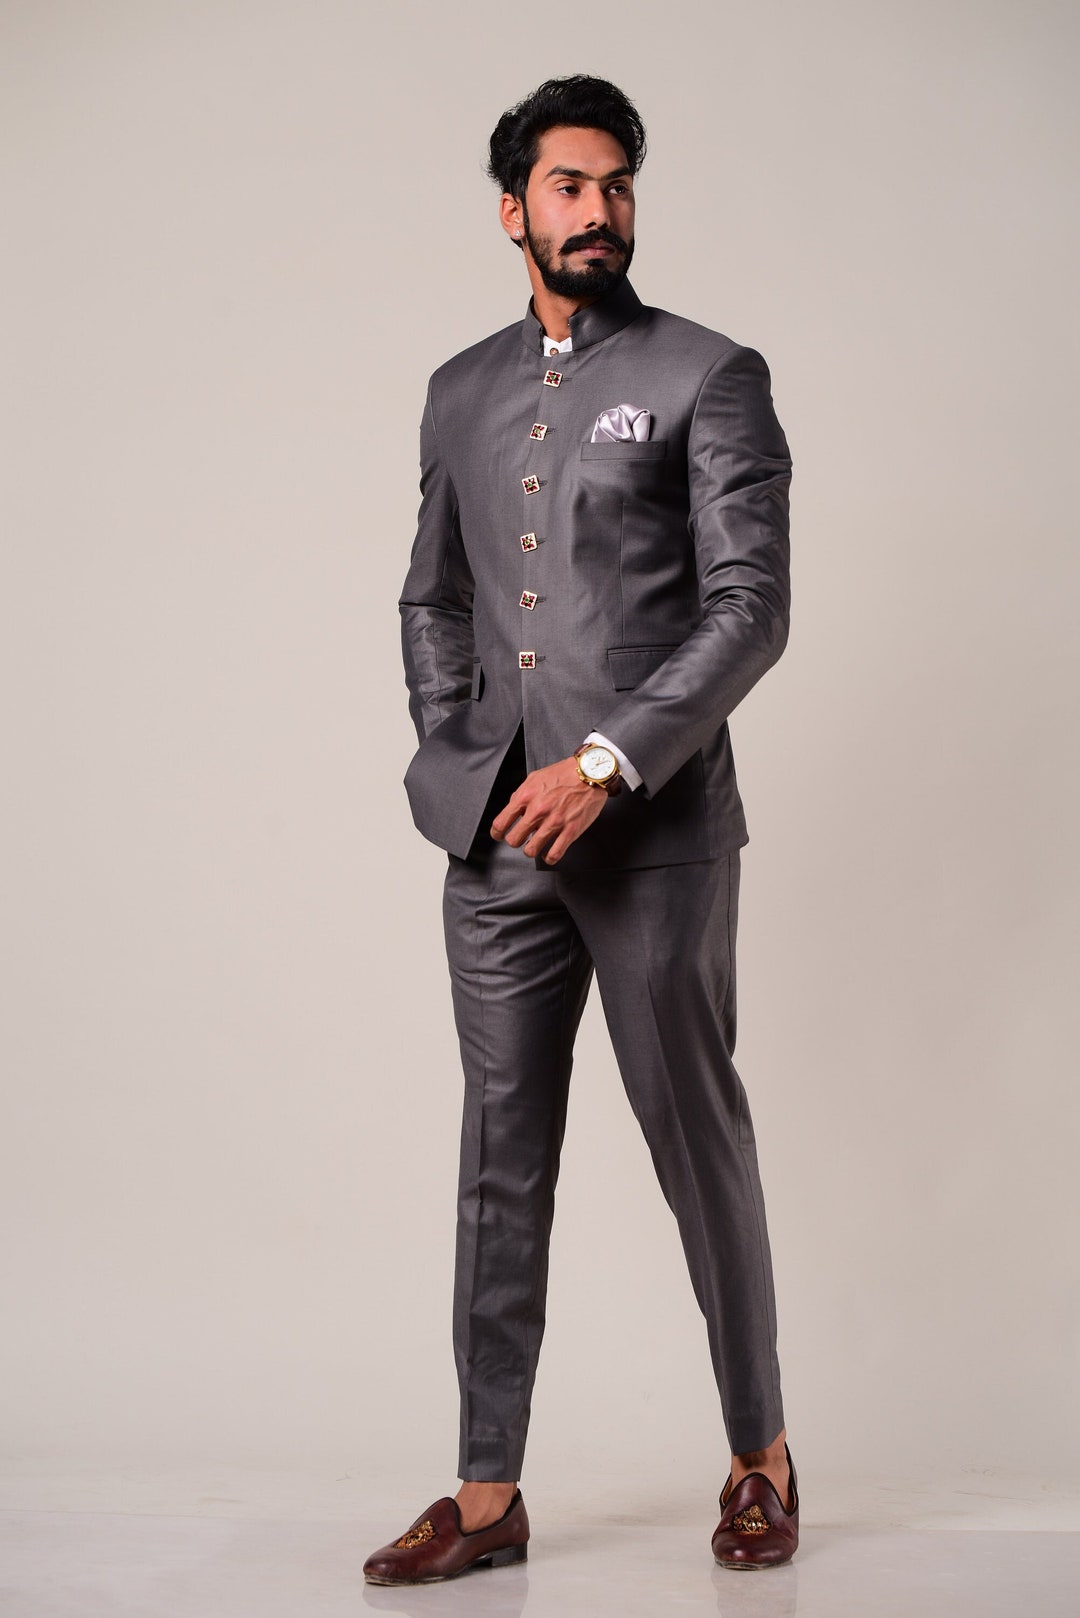 Imported Fabric Mandarin Bandhgala Suit Jodhpuri Suit Ethnic Indian Suit |  eBay